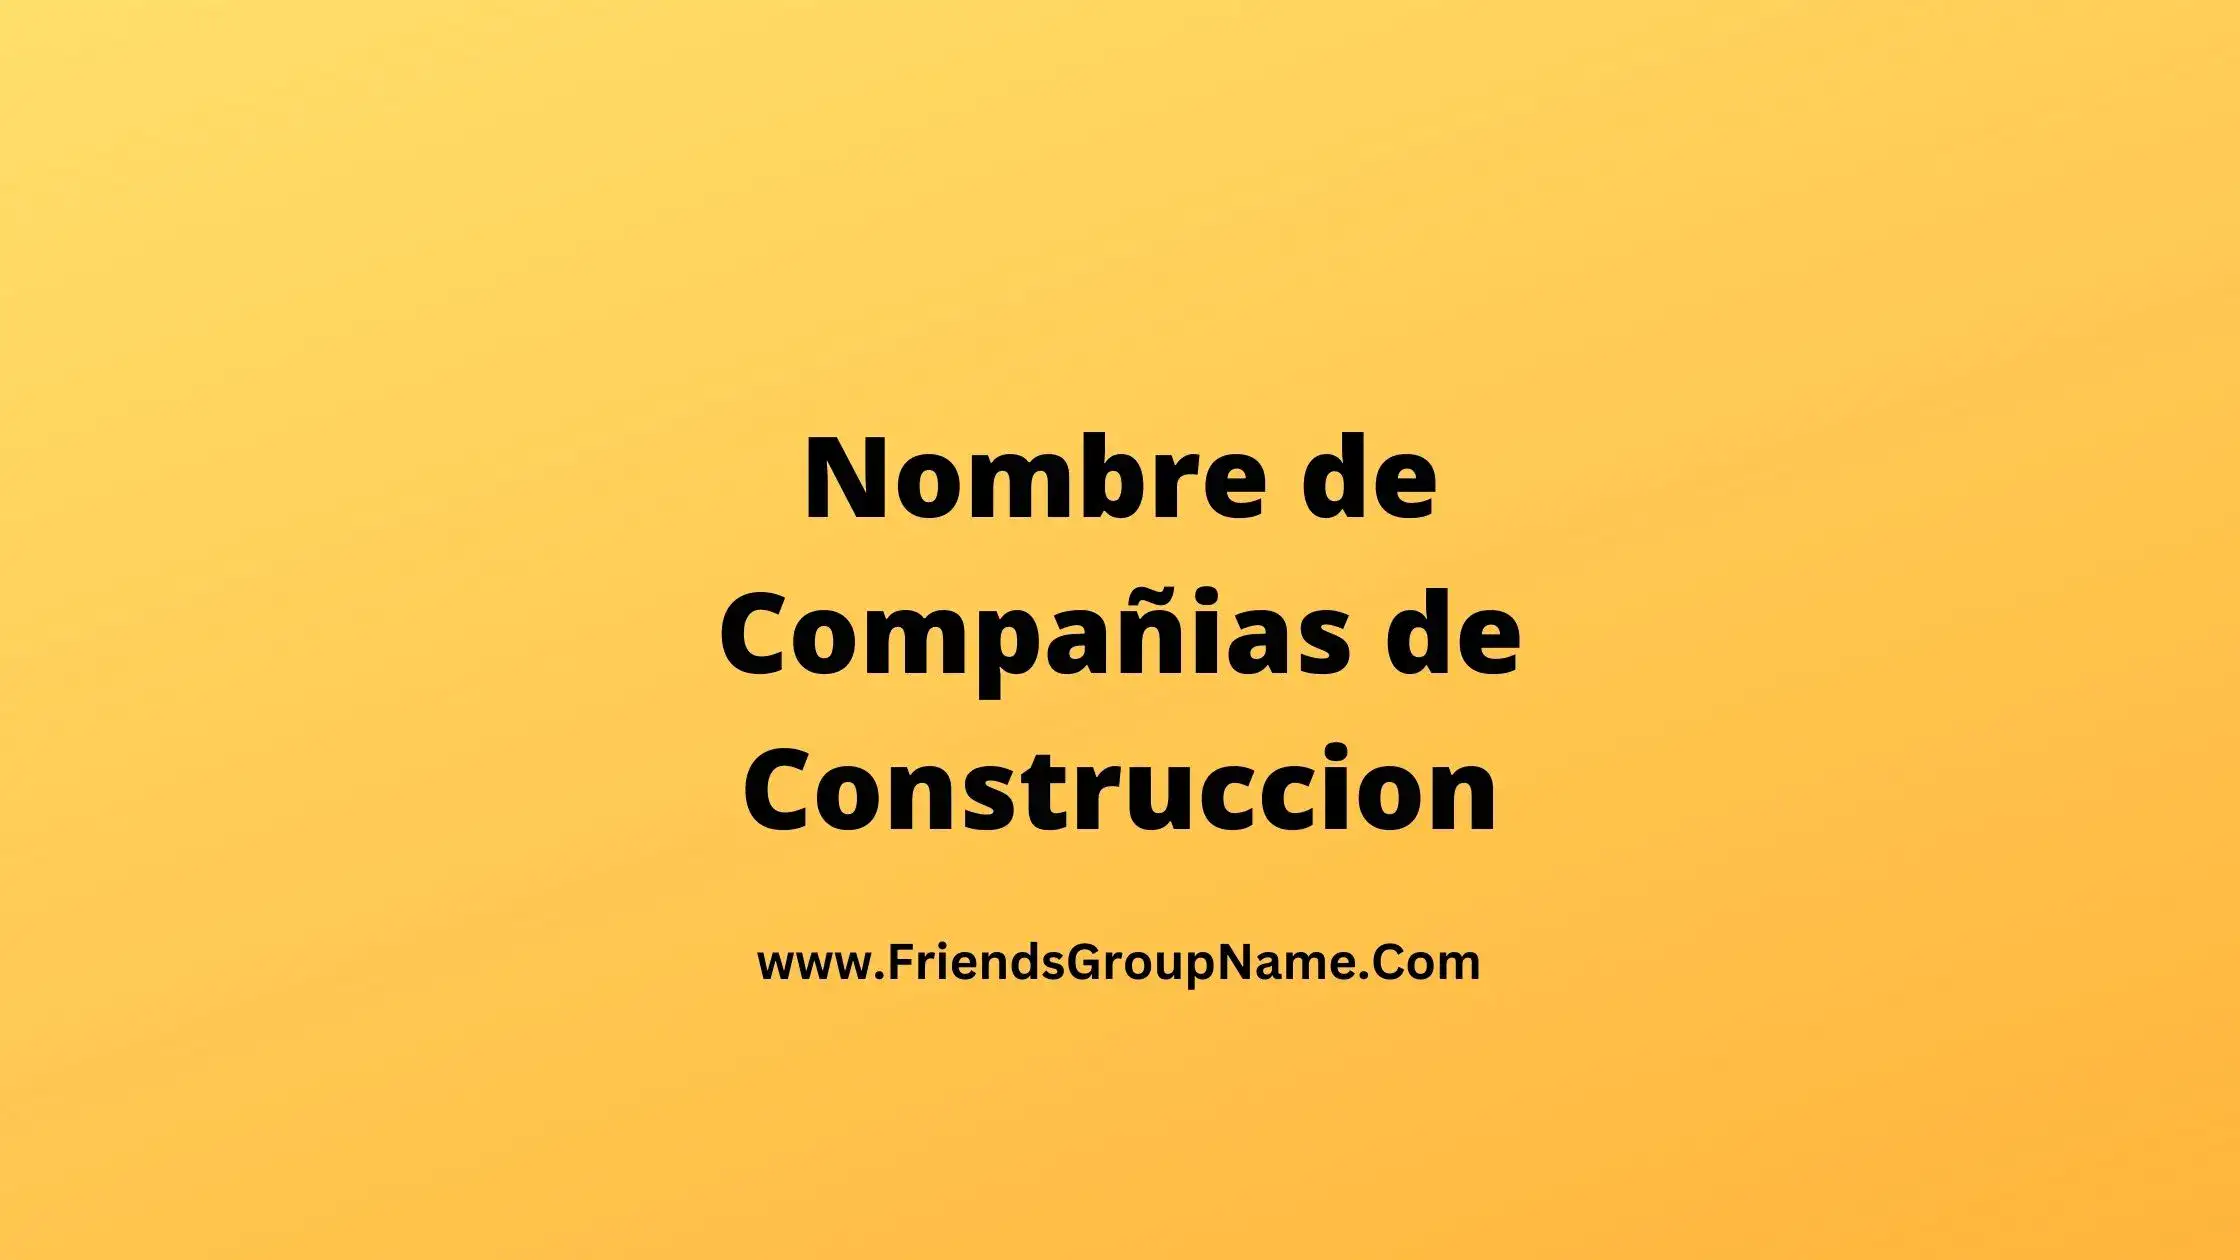 Nombre de Compañias de Construccion